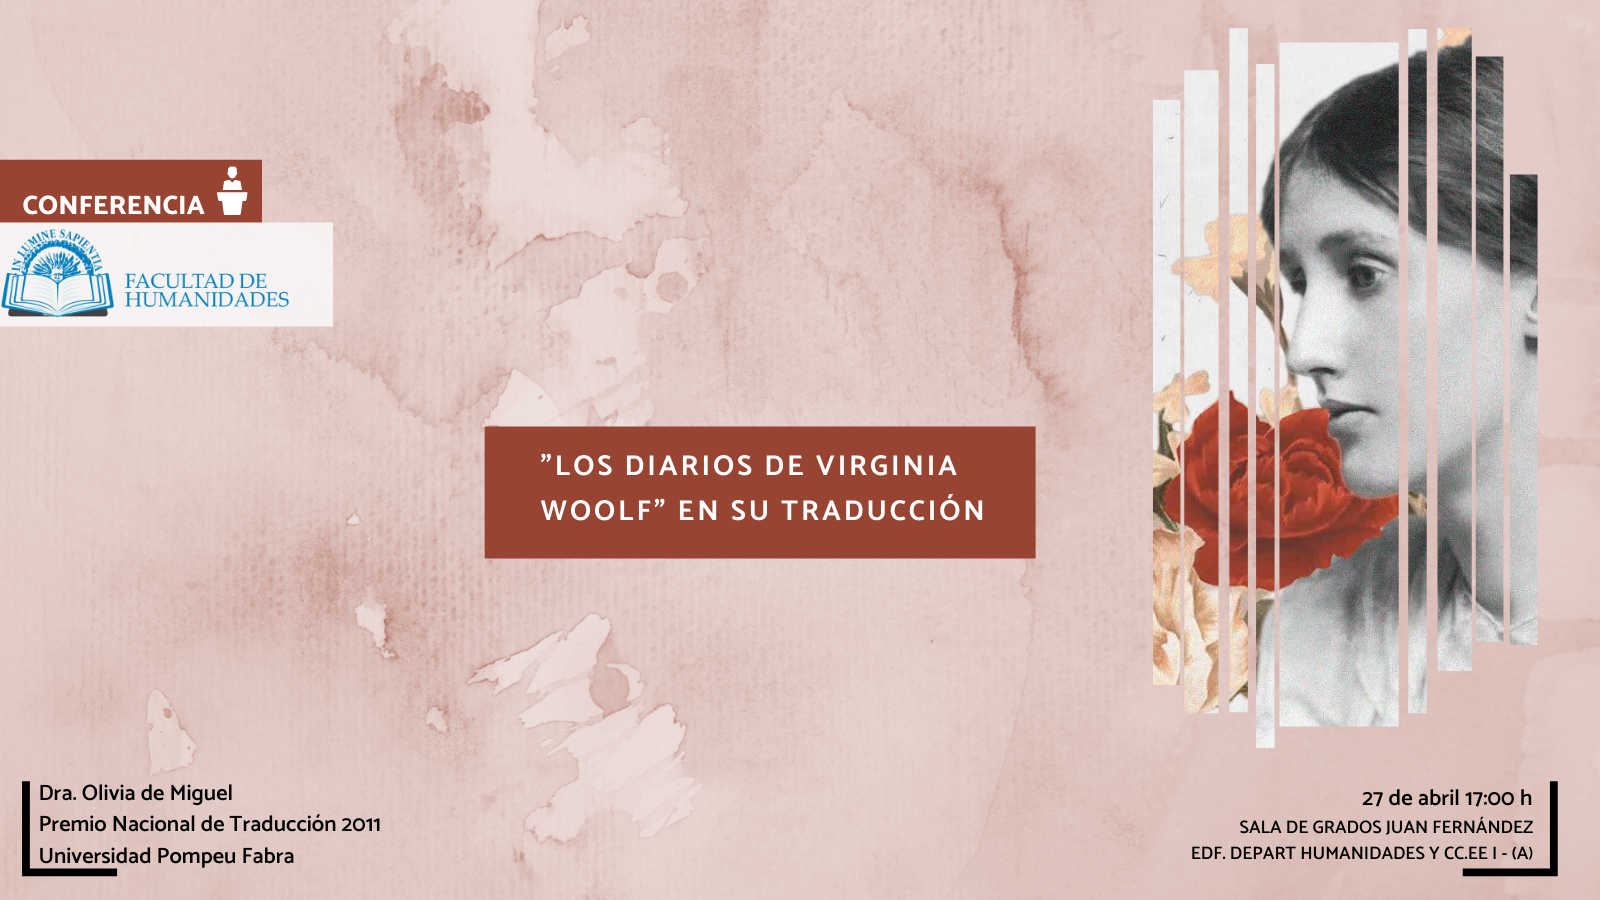 La Facultad de Humanidades y Jesús Isaías Gómez López organizan la actividad titulada «Los diarios de Virginia Woolf en su traducción».